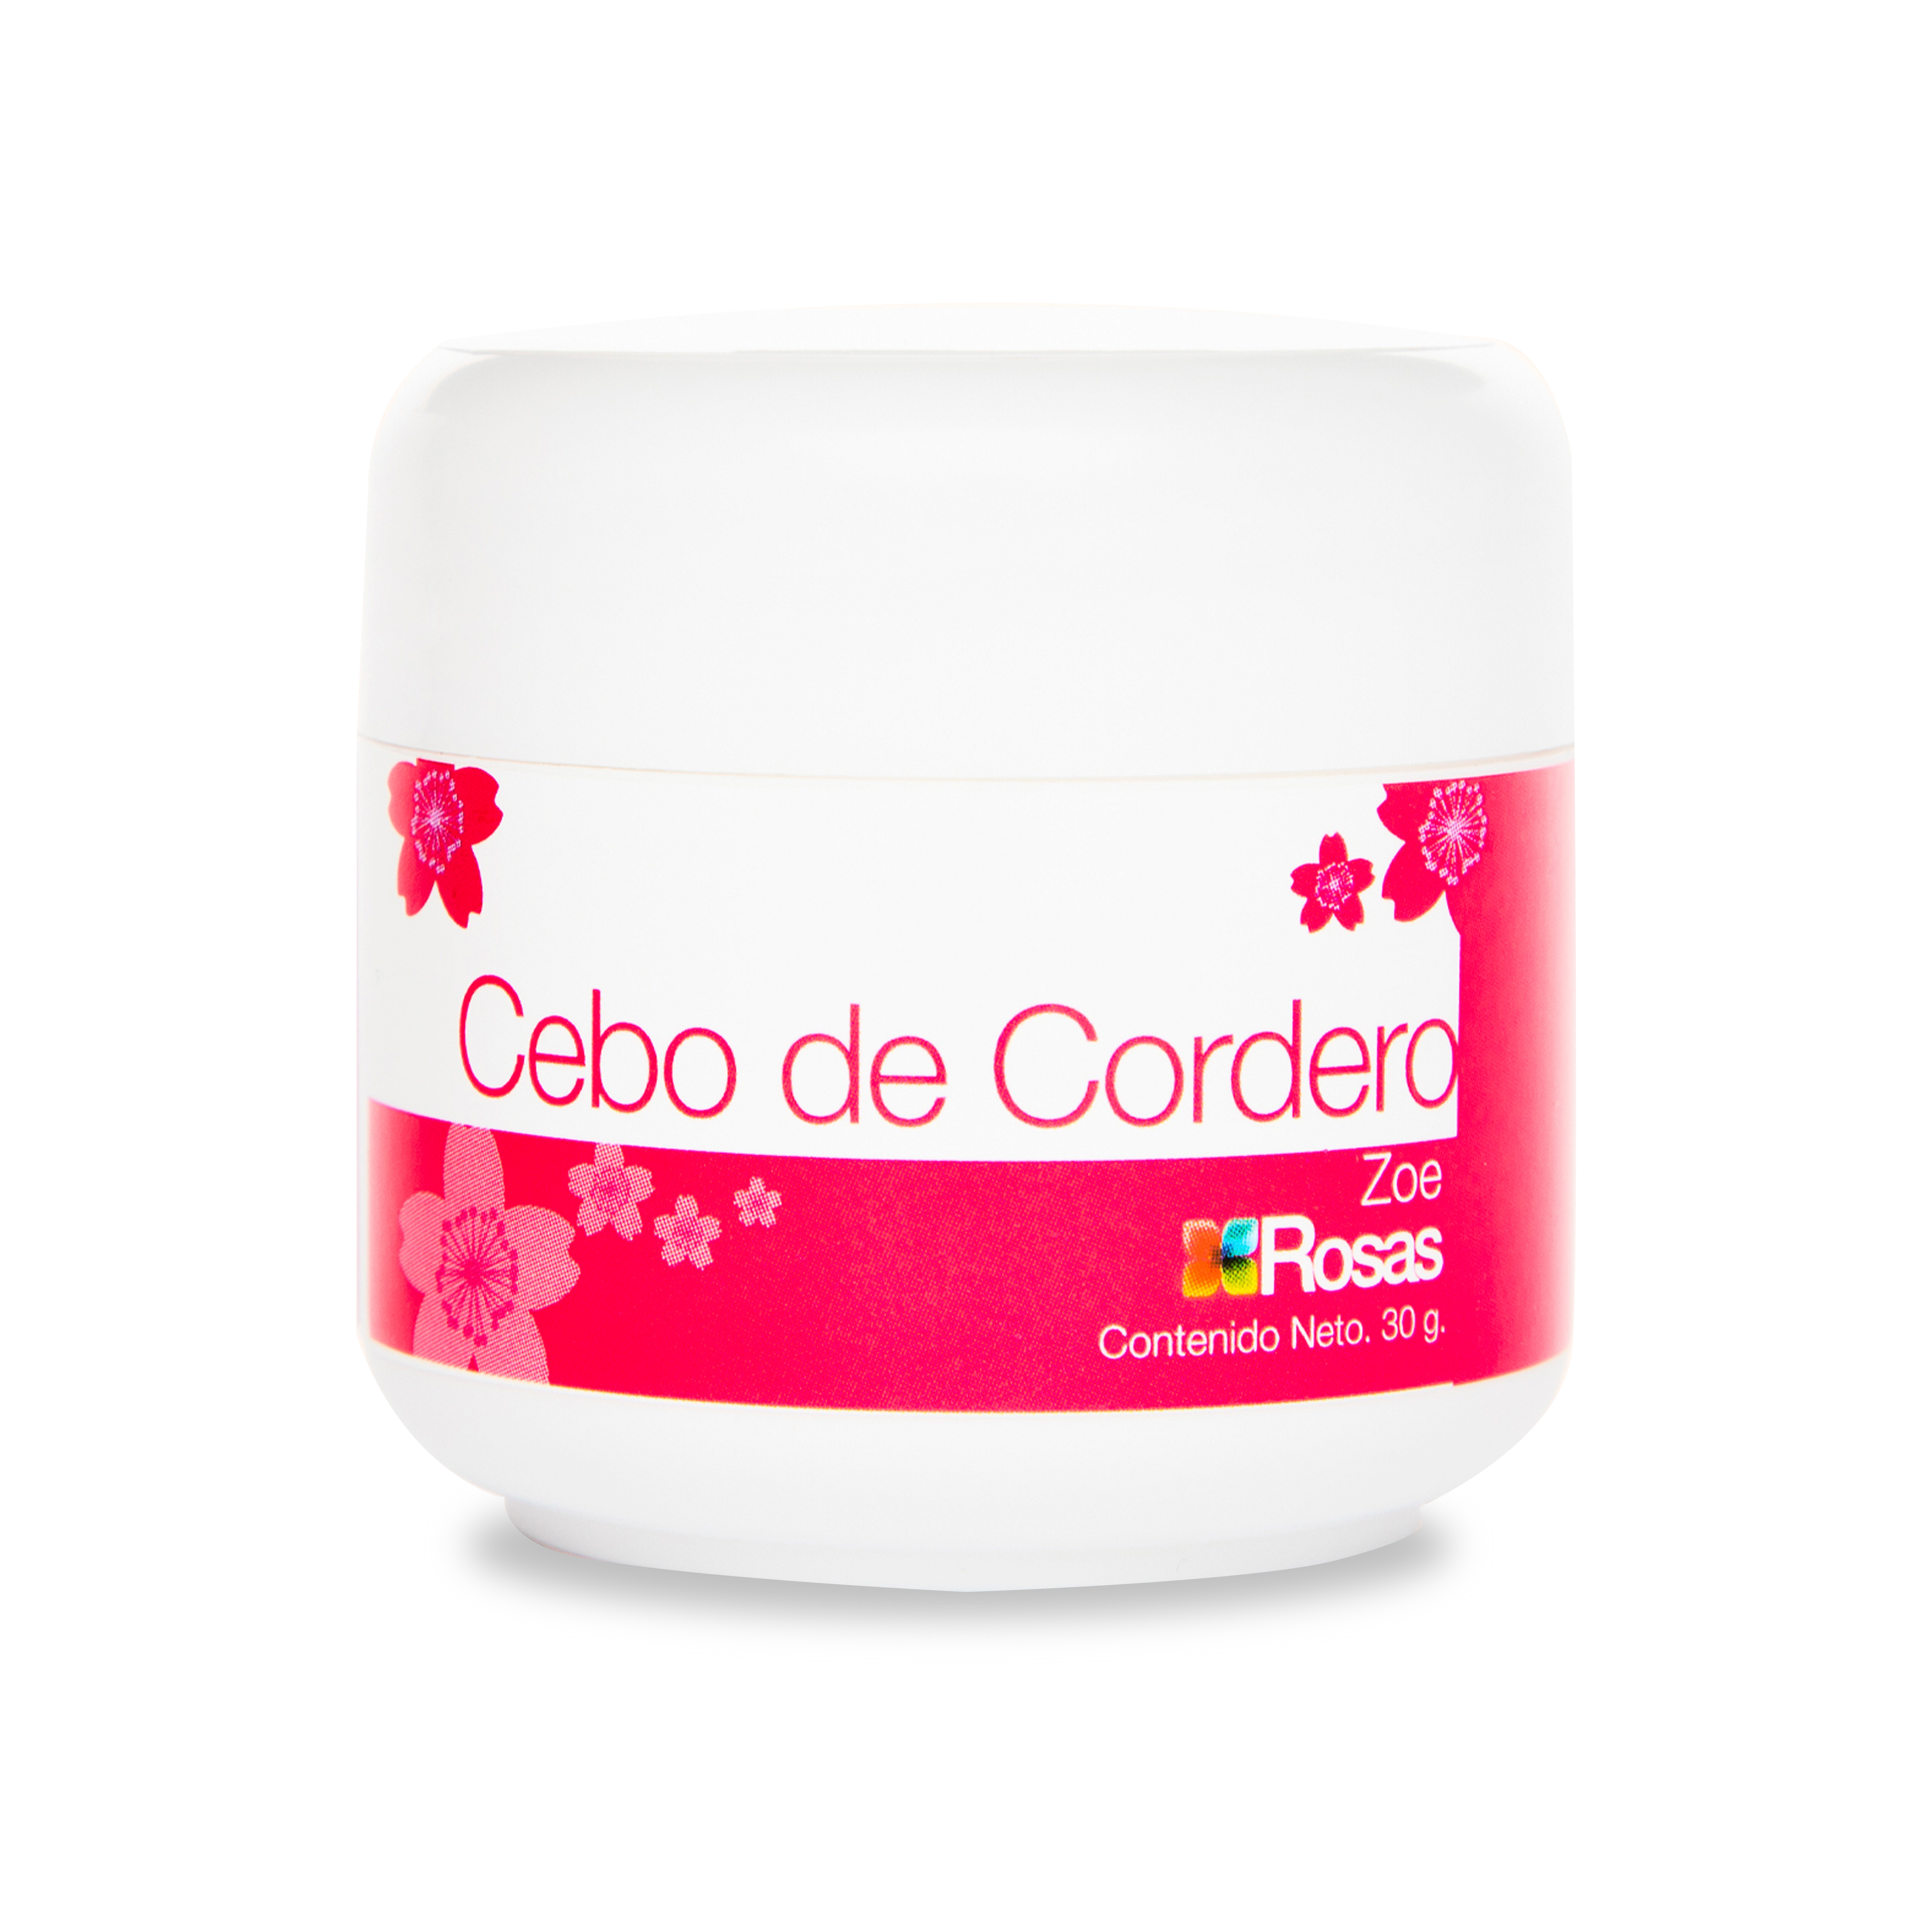 https://www.drogueriasrosas.com/cdn/shop/products/Cebo_de_cordero30_g_3622744b-bf83-44e5-b158-c39475f90cd6.png?v=1690598768